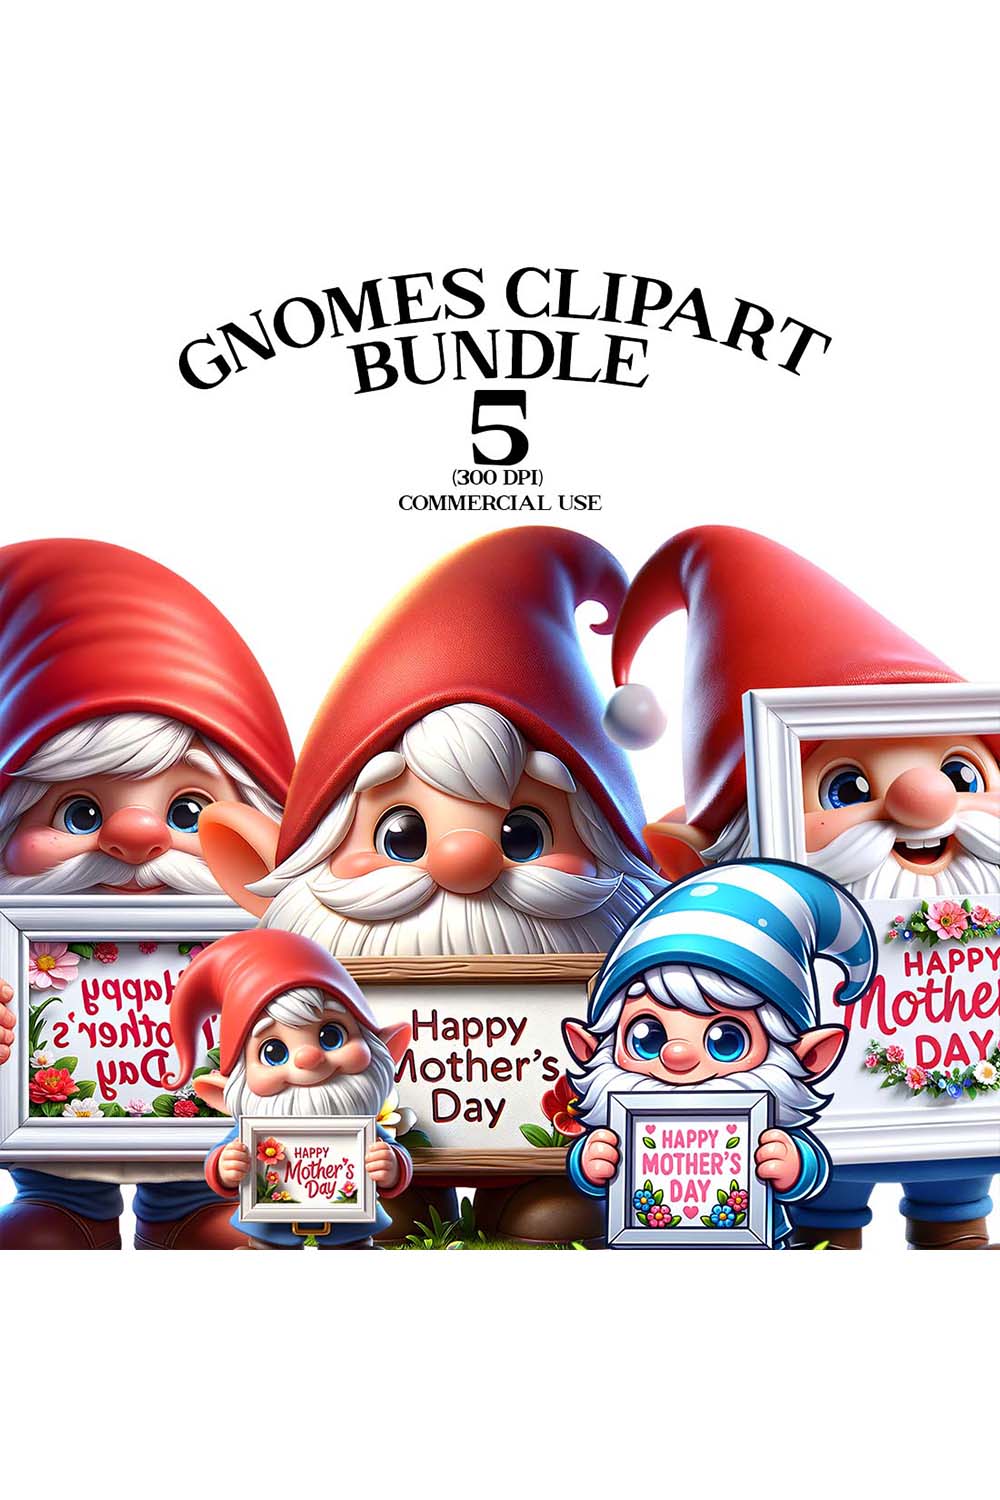 Mothers Day Gnome Clipart Bundle | Clipart Bundle pinterest preview image.